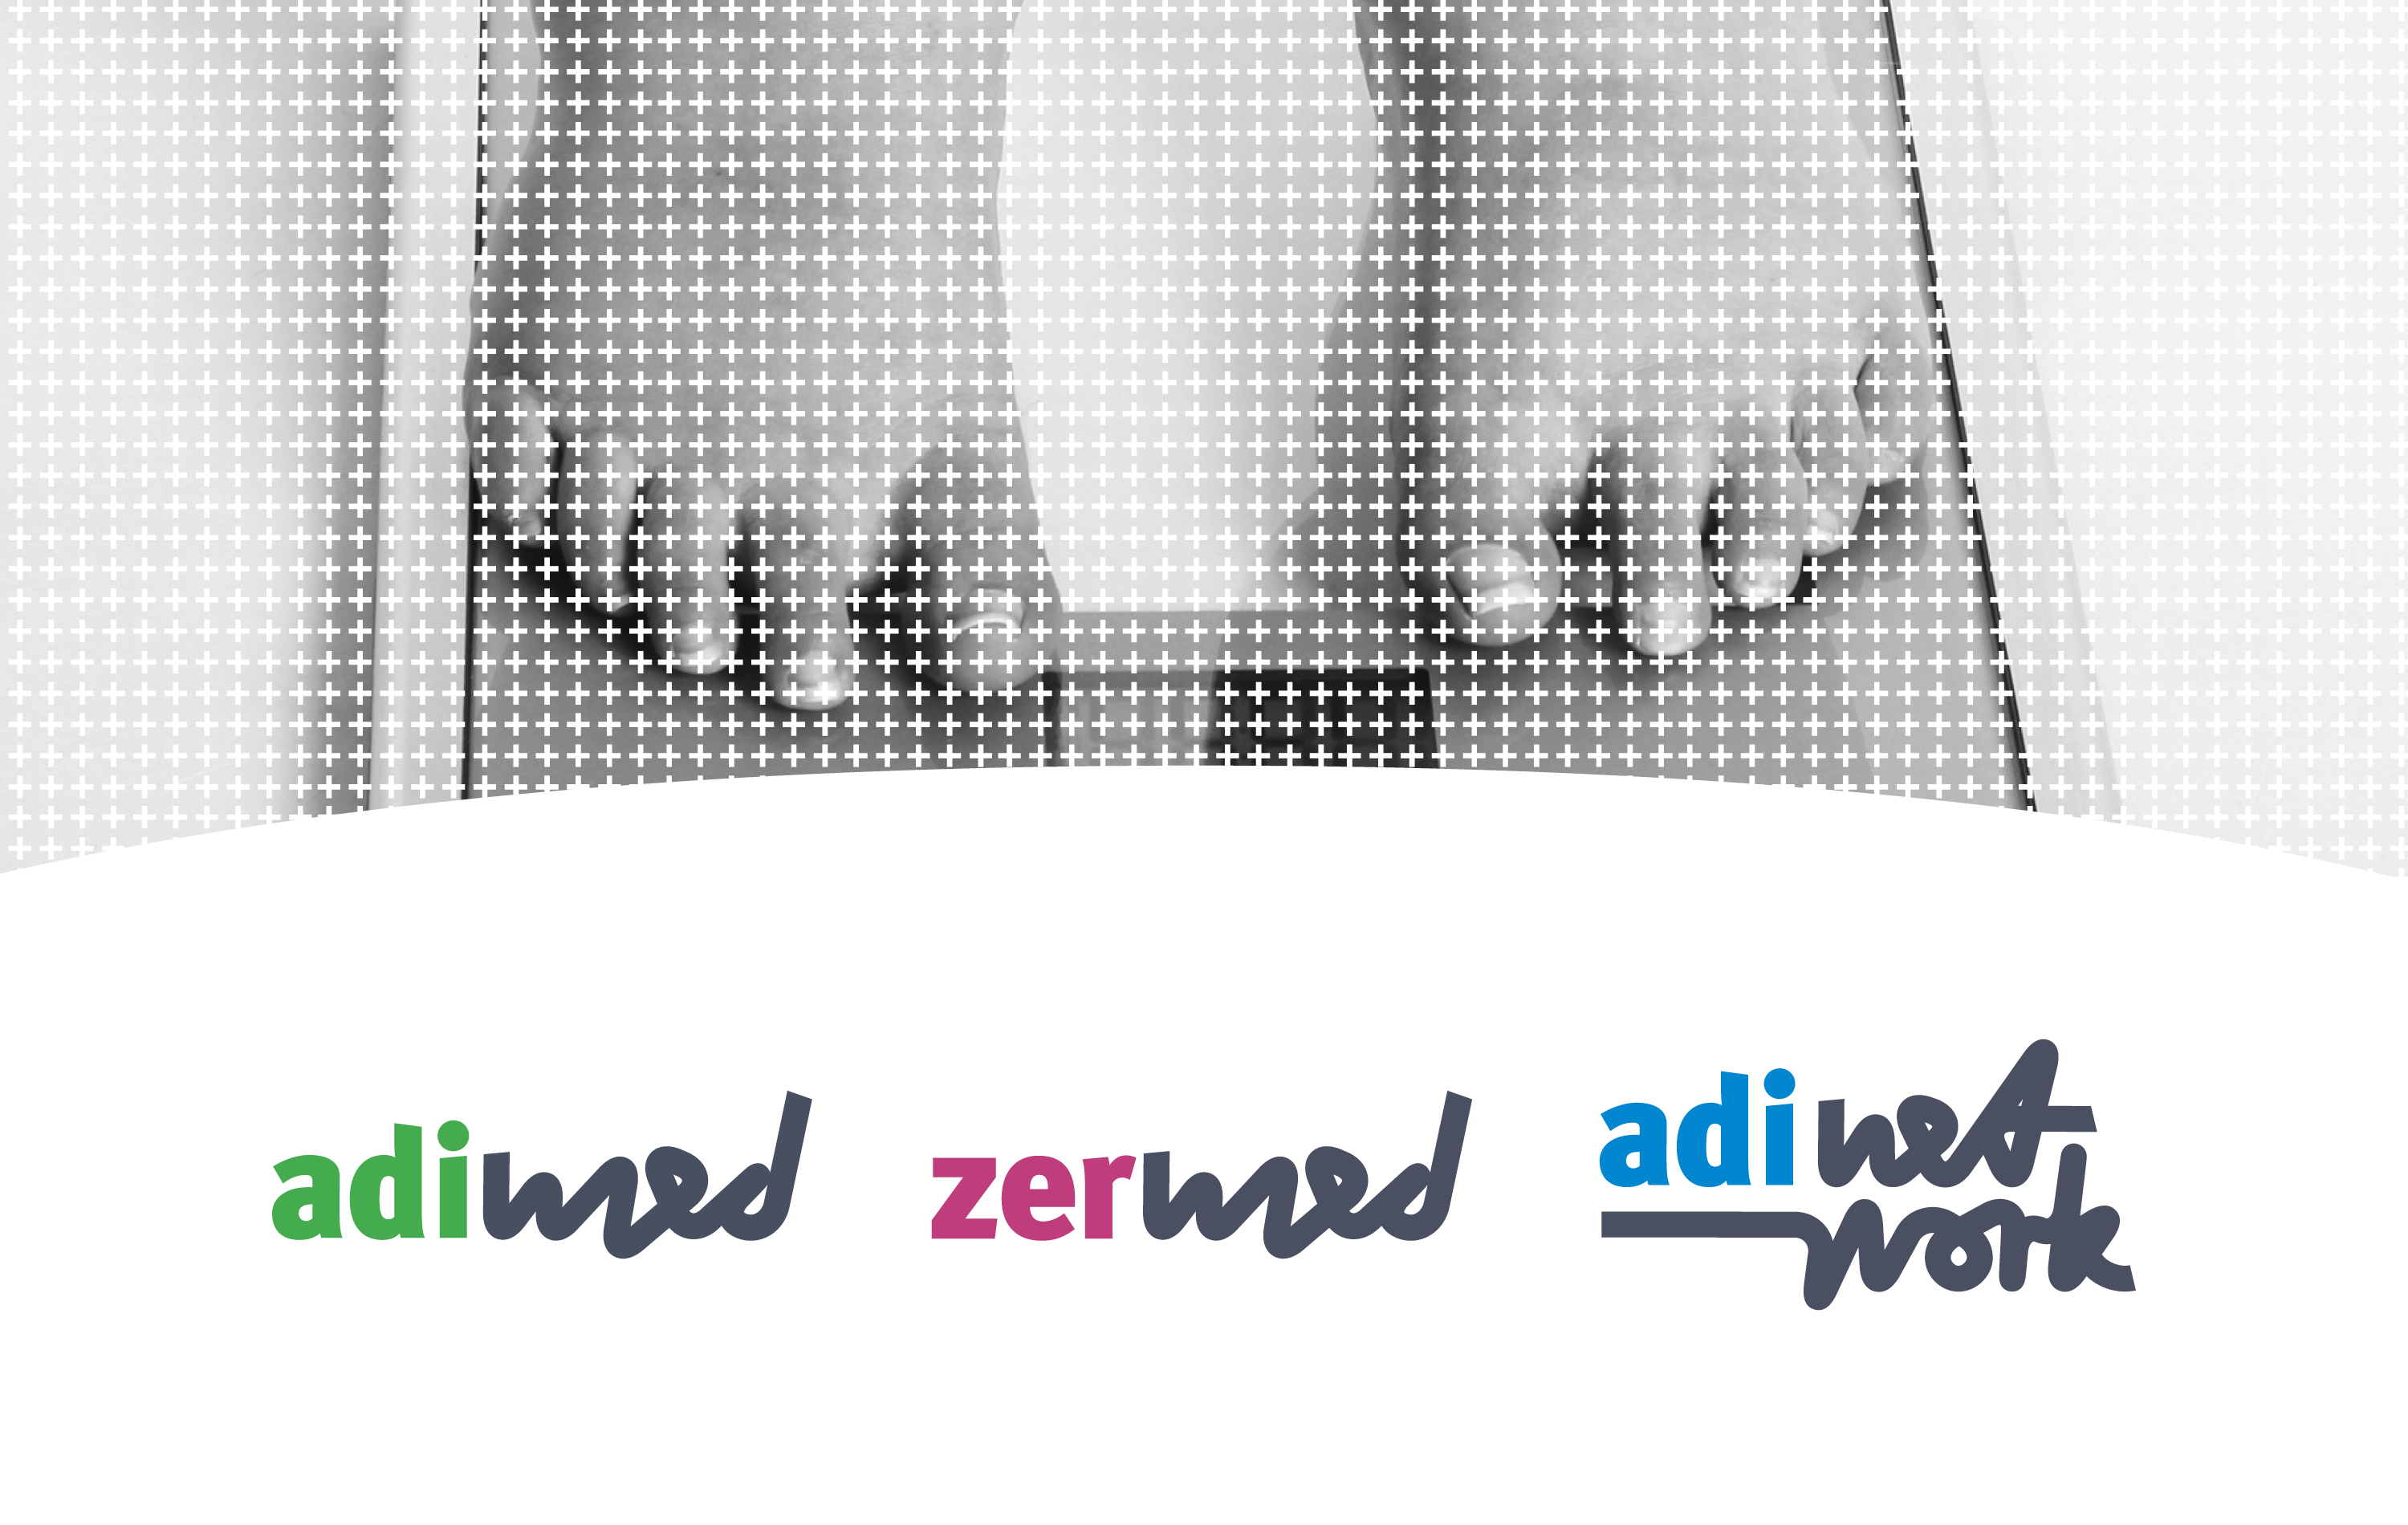 Abbildung der Logos von Adimed, Zermed und Medical AdiNetwork